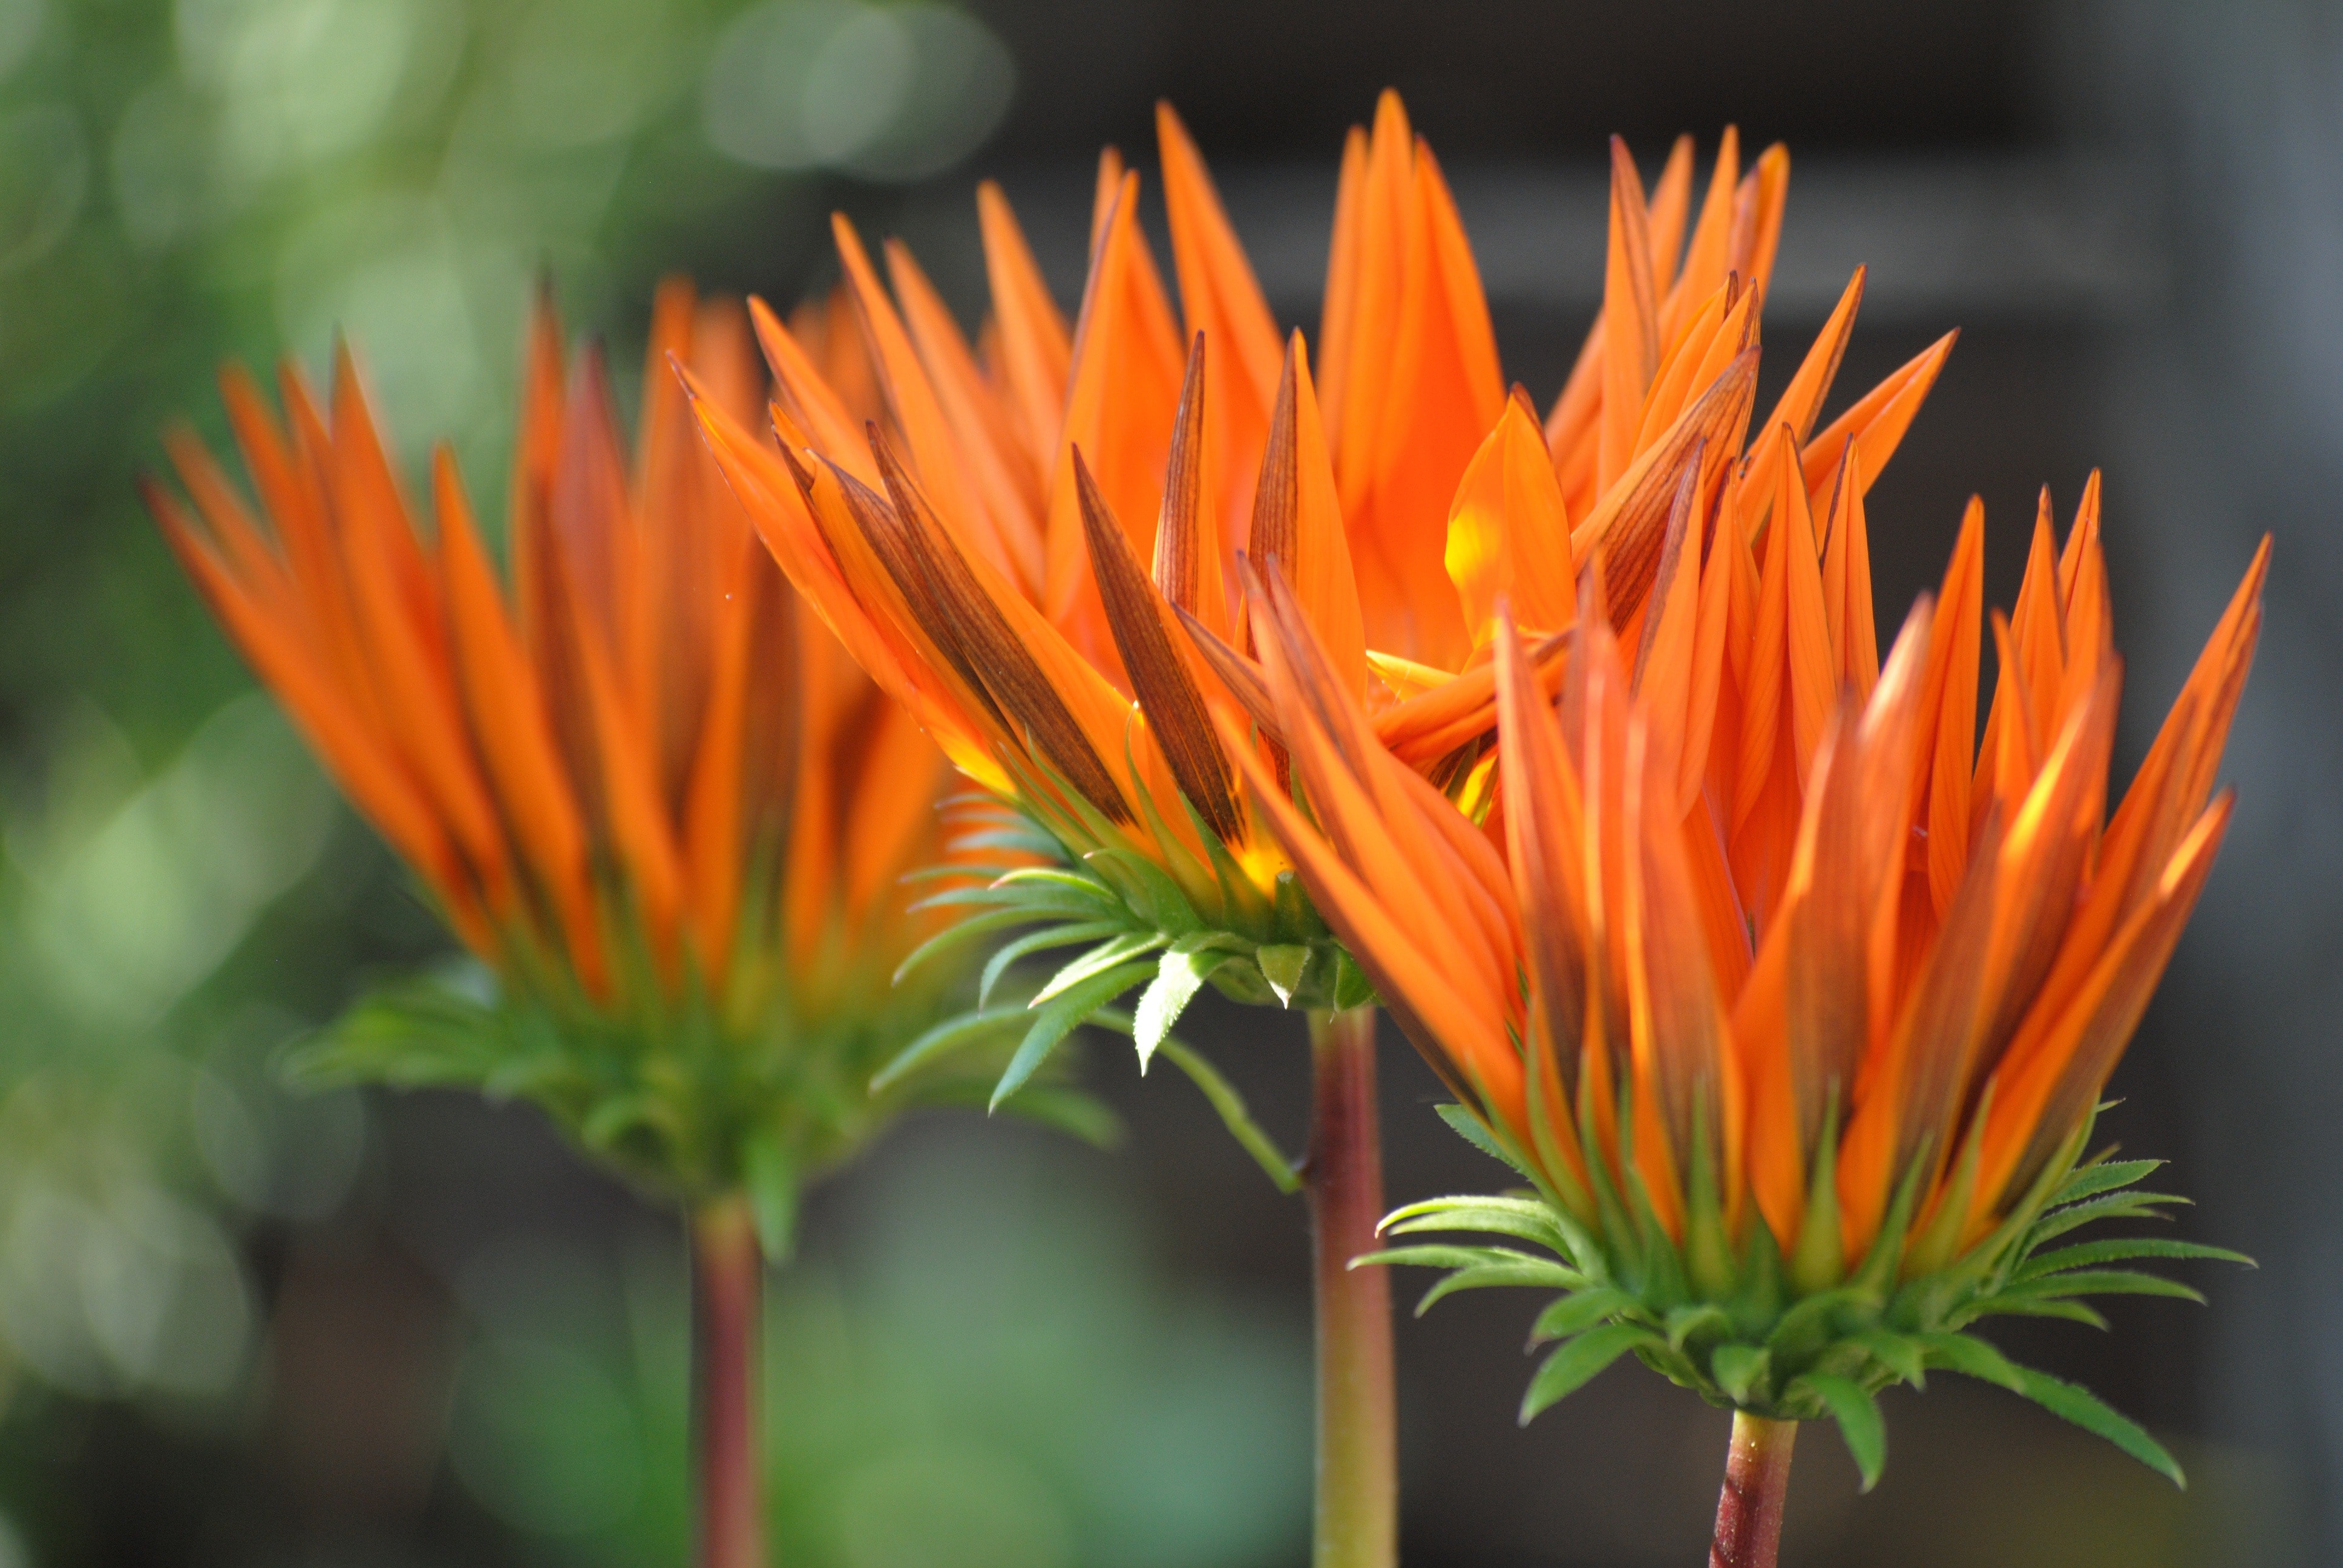 orange gazania about to bloom during daytime